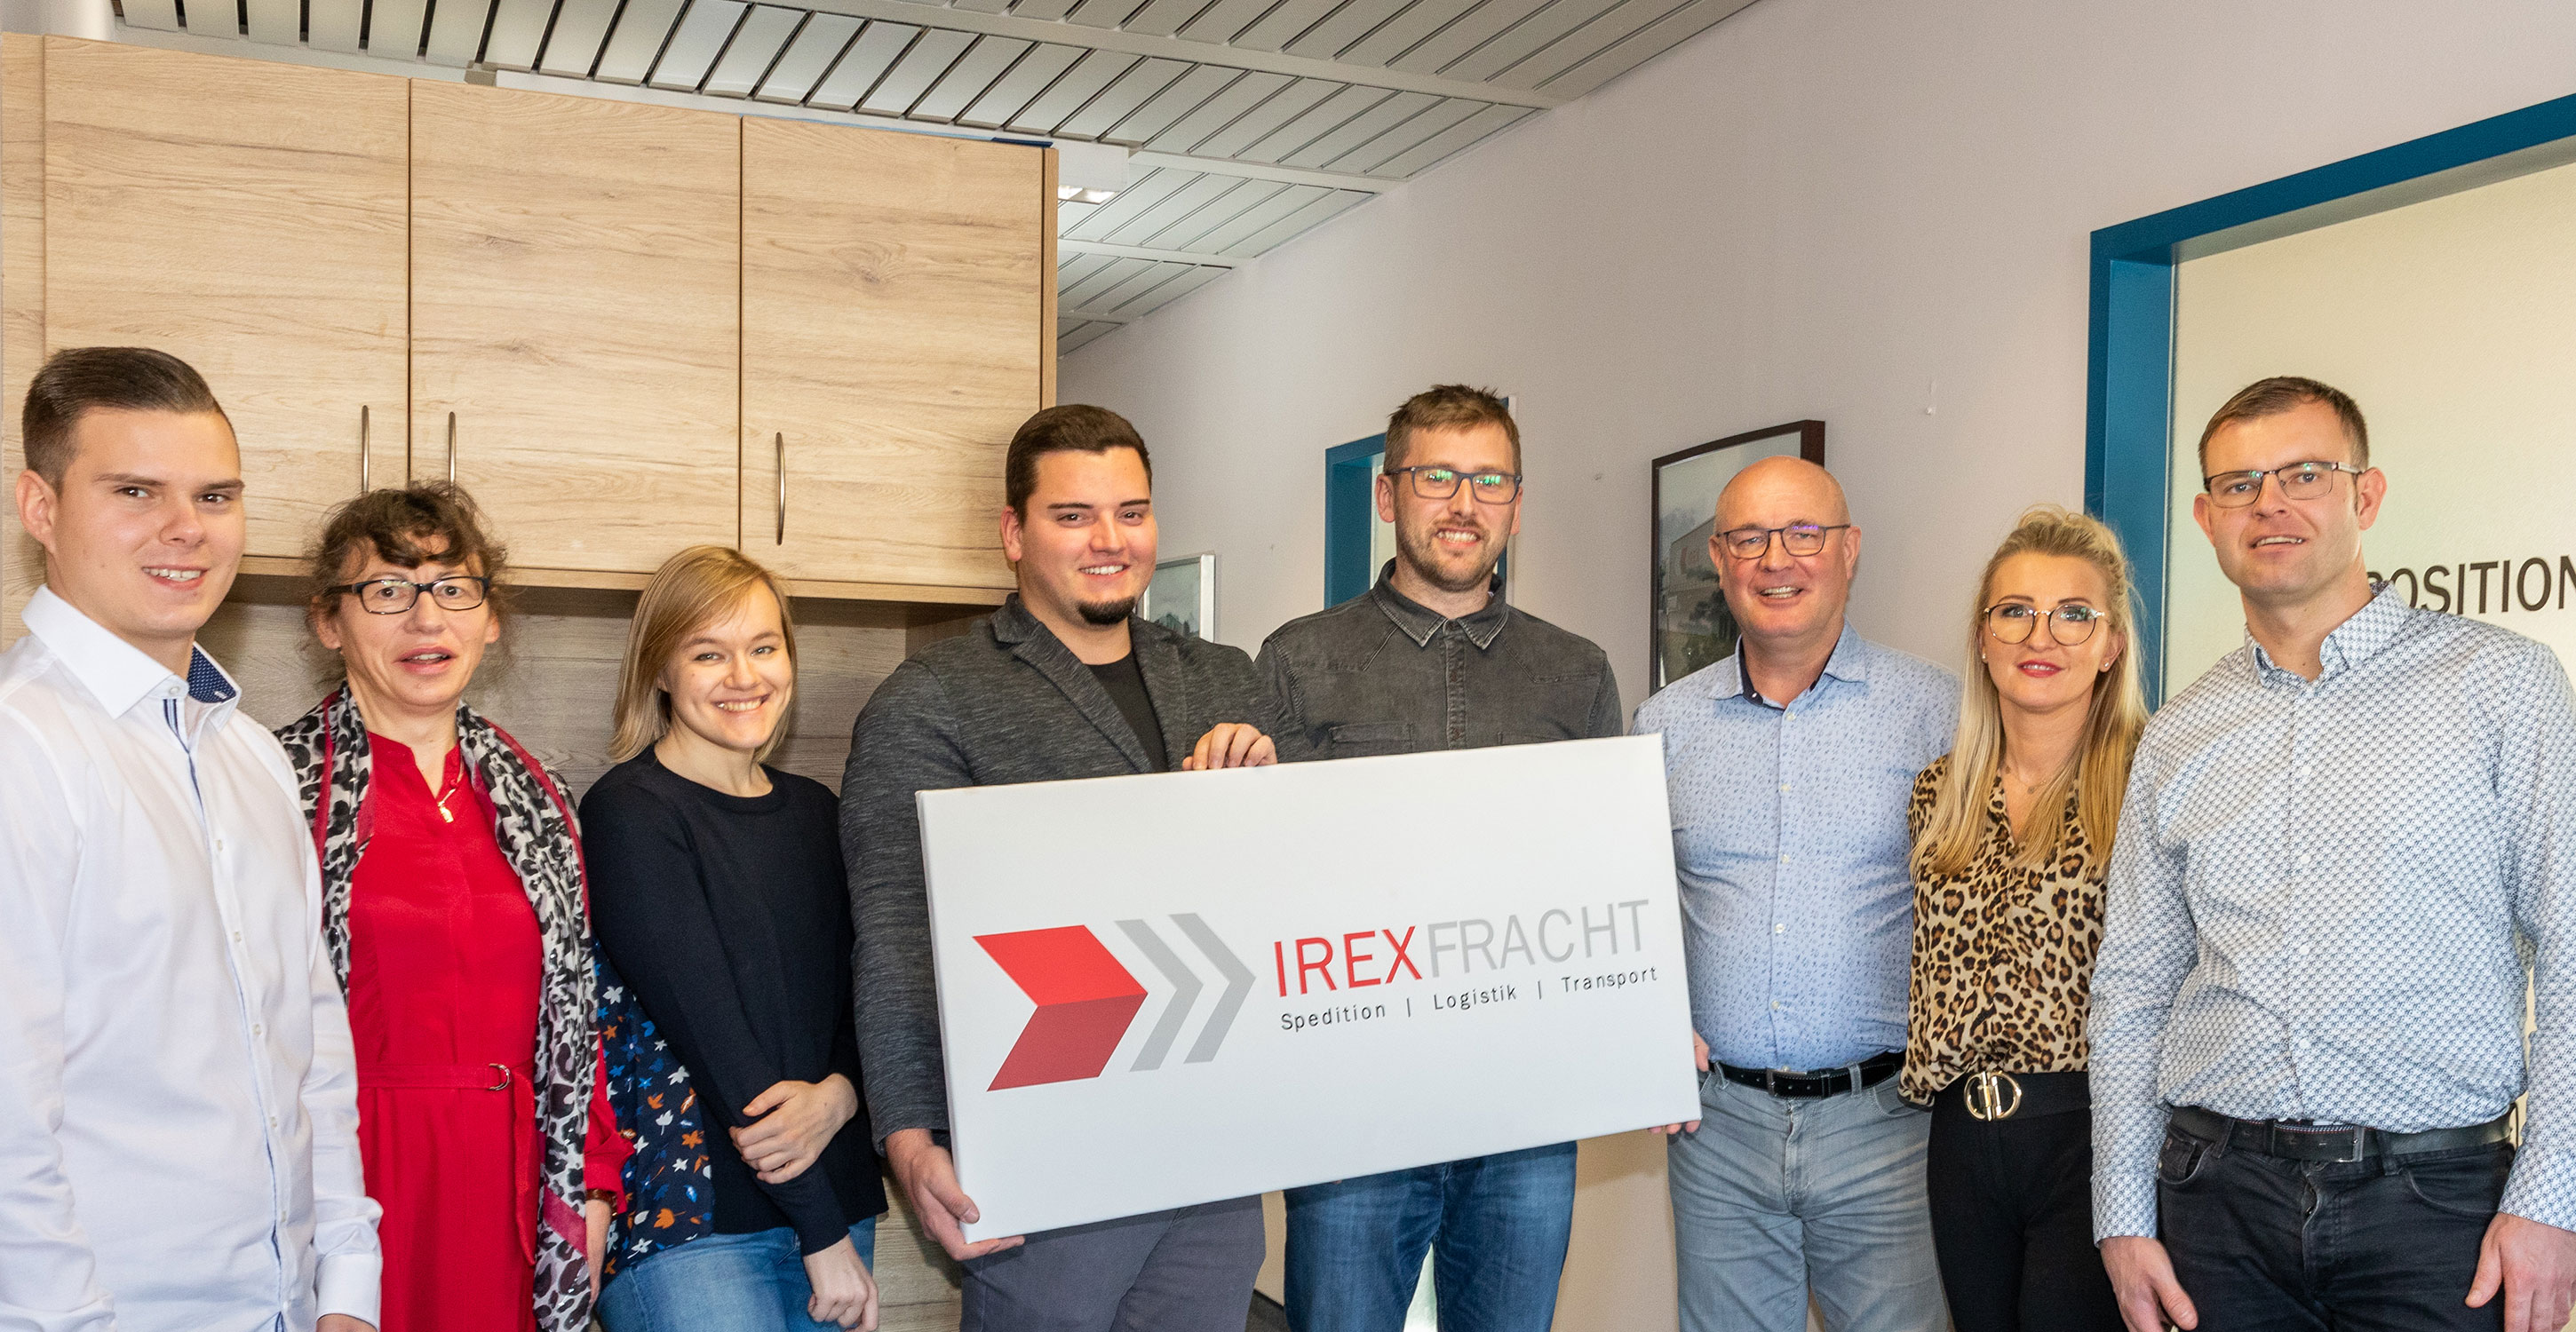 Karriere bei Irex-Fracht – Ihre Zukunft in der Logistik